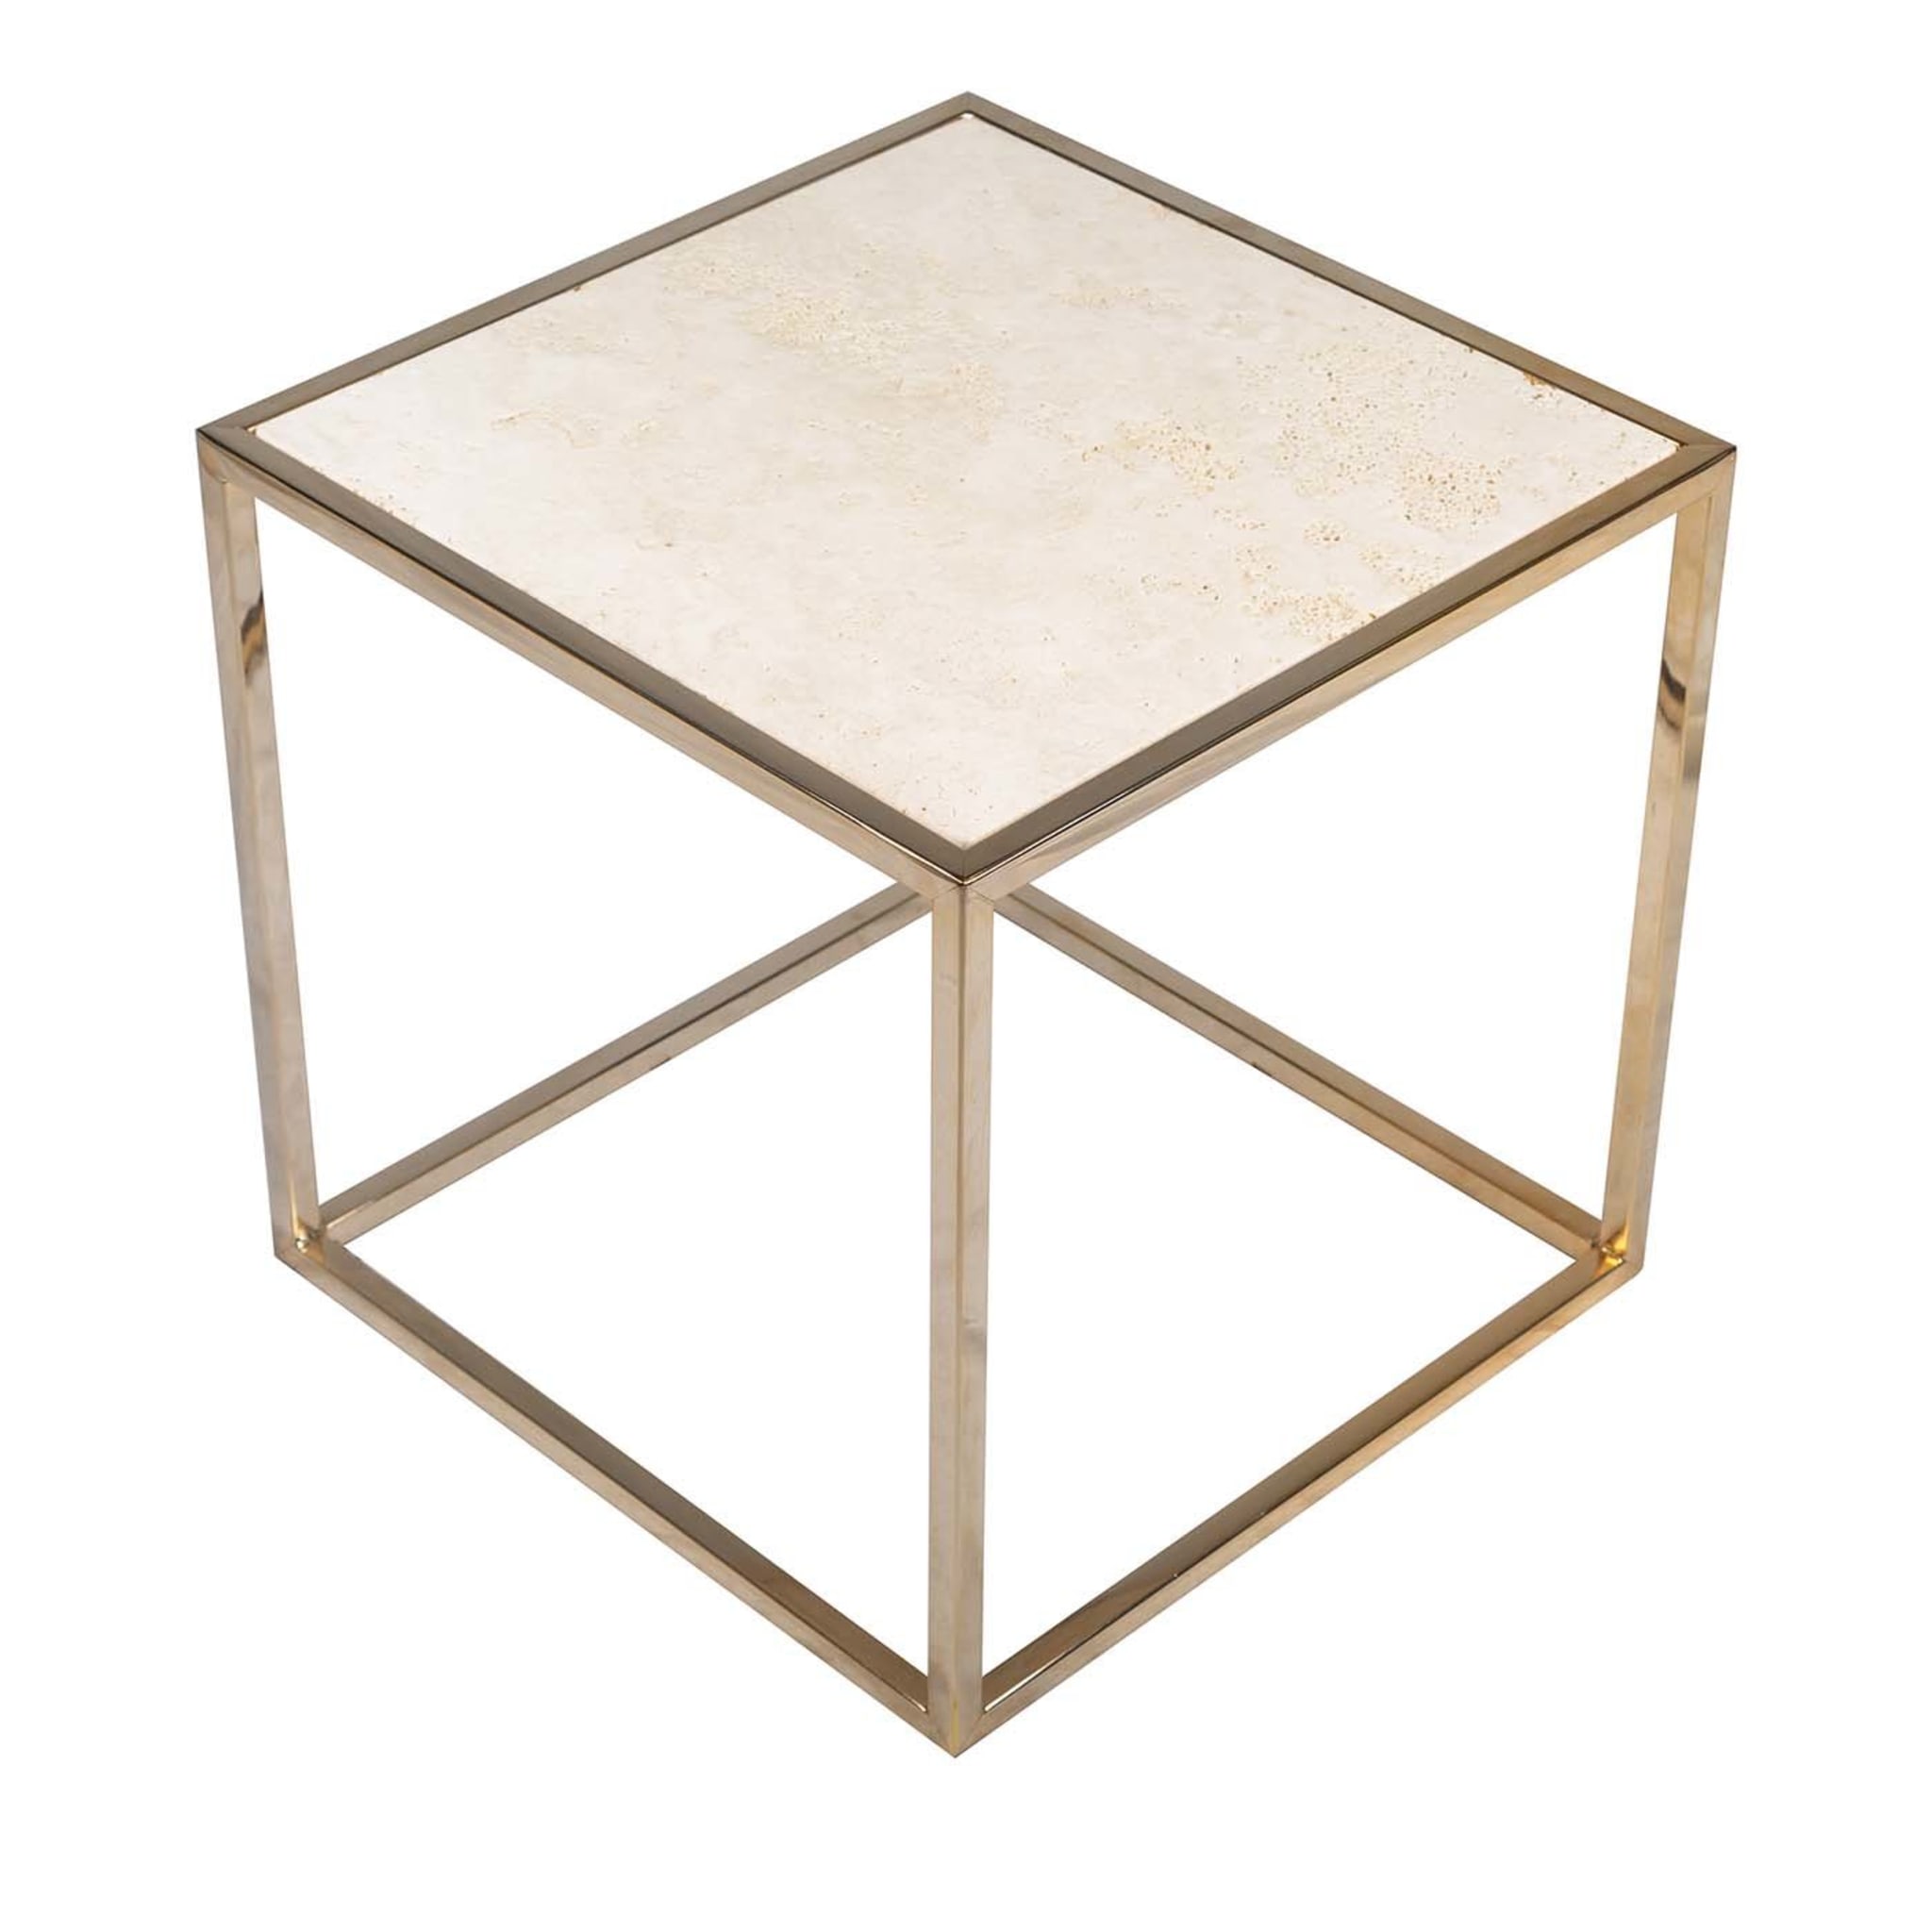 Table d'appoint cubique avec finition dorée - Vue principale